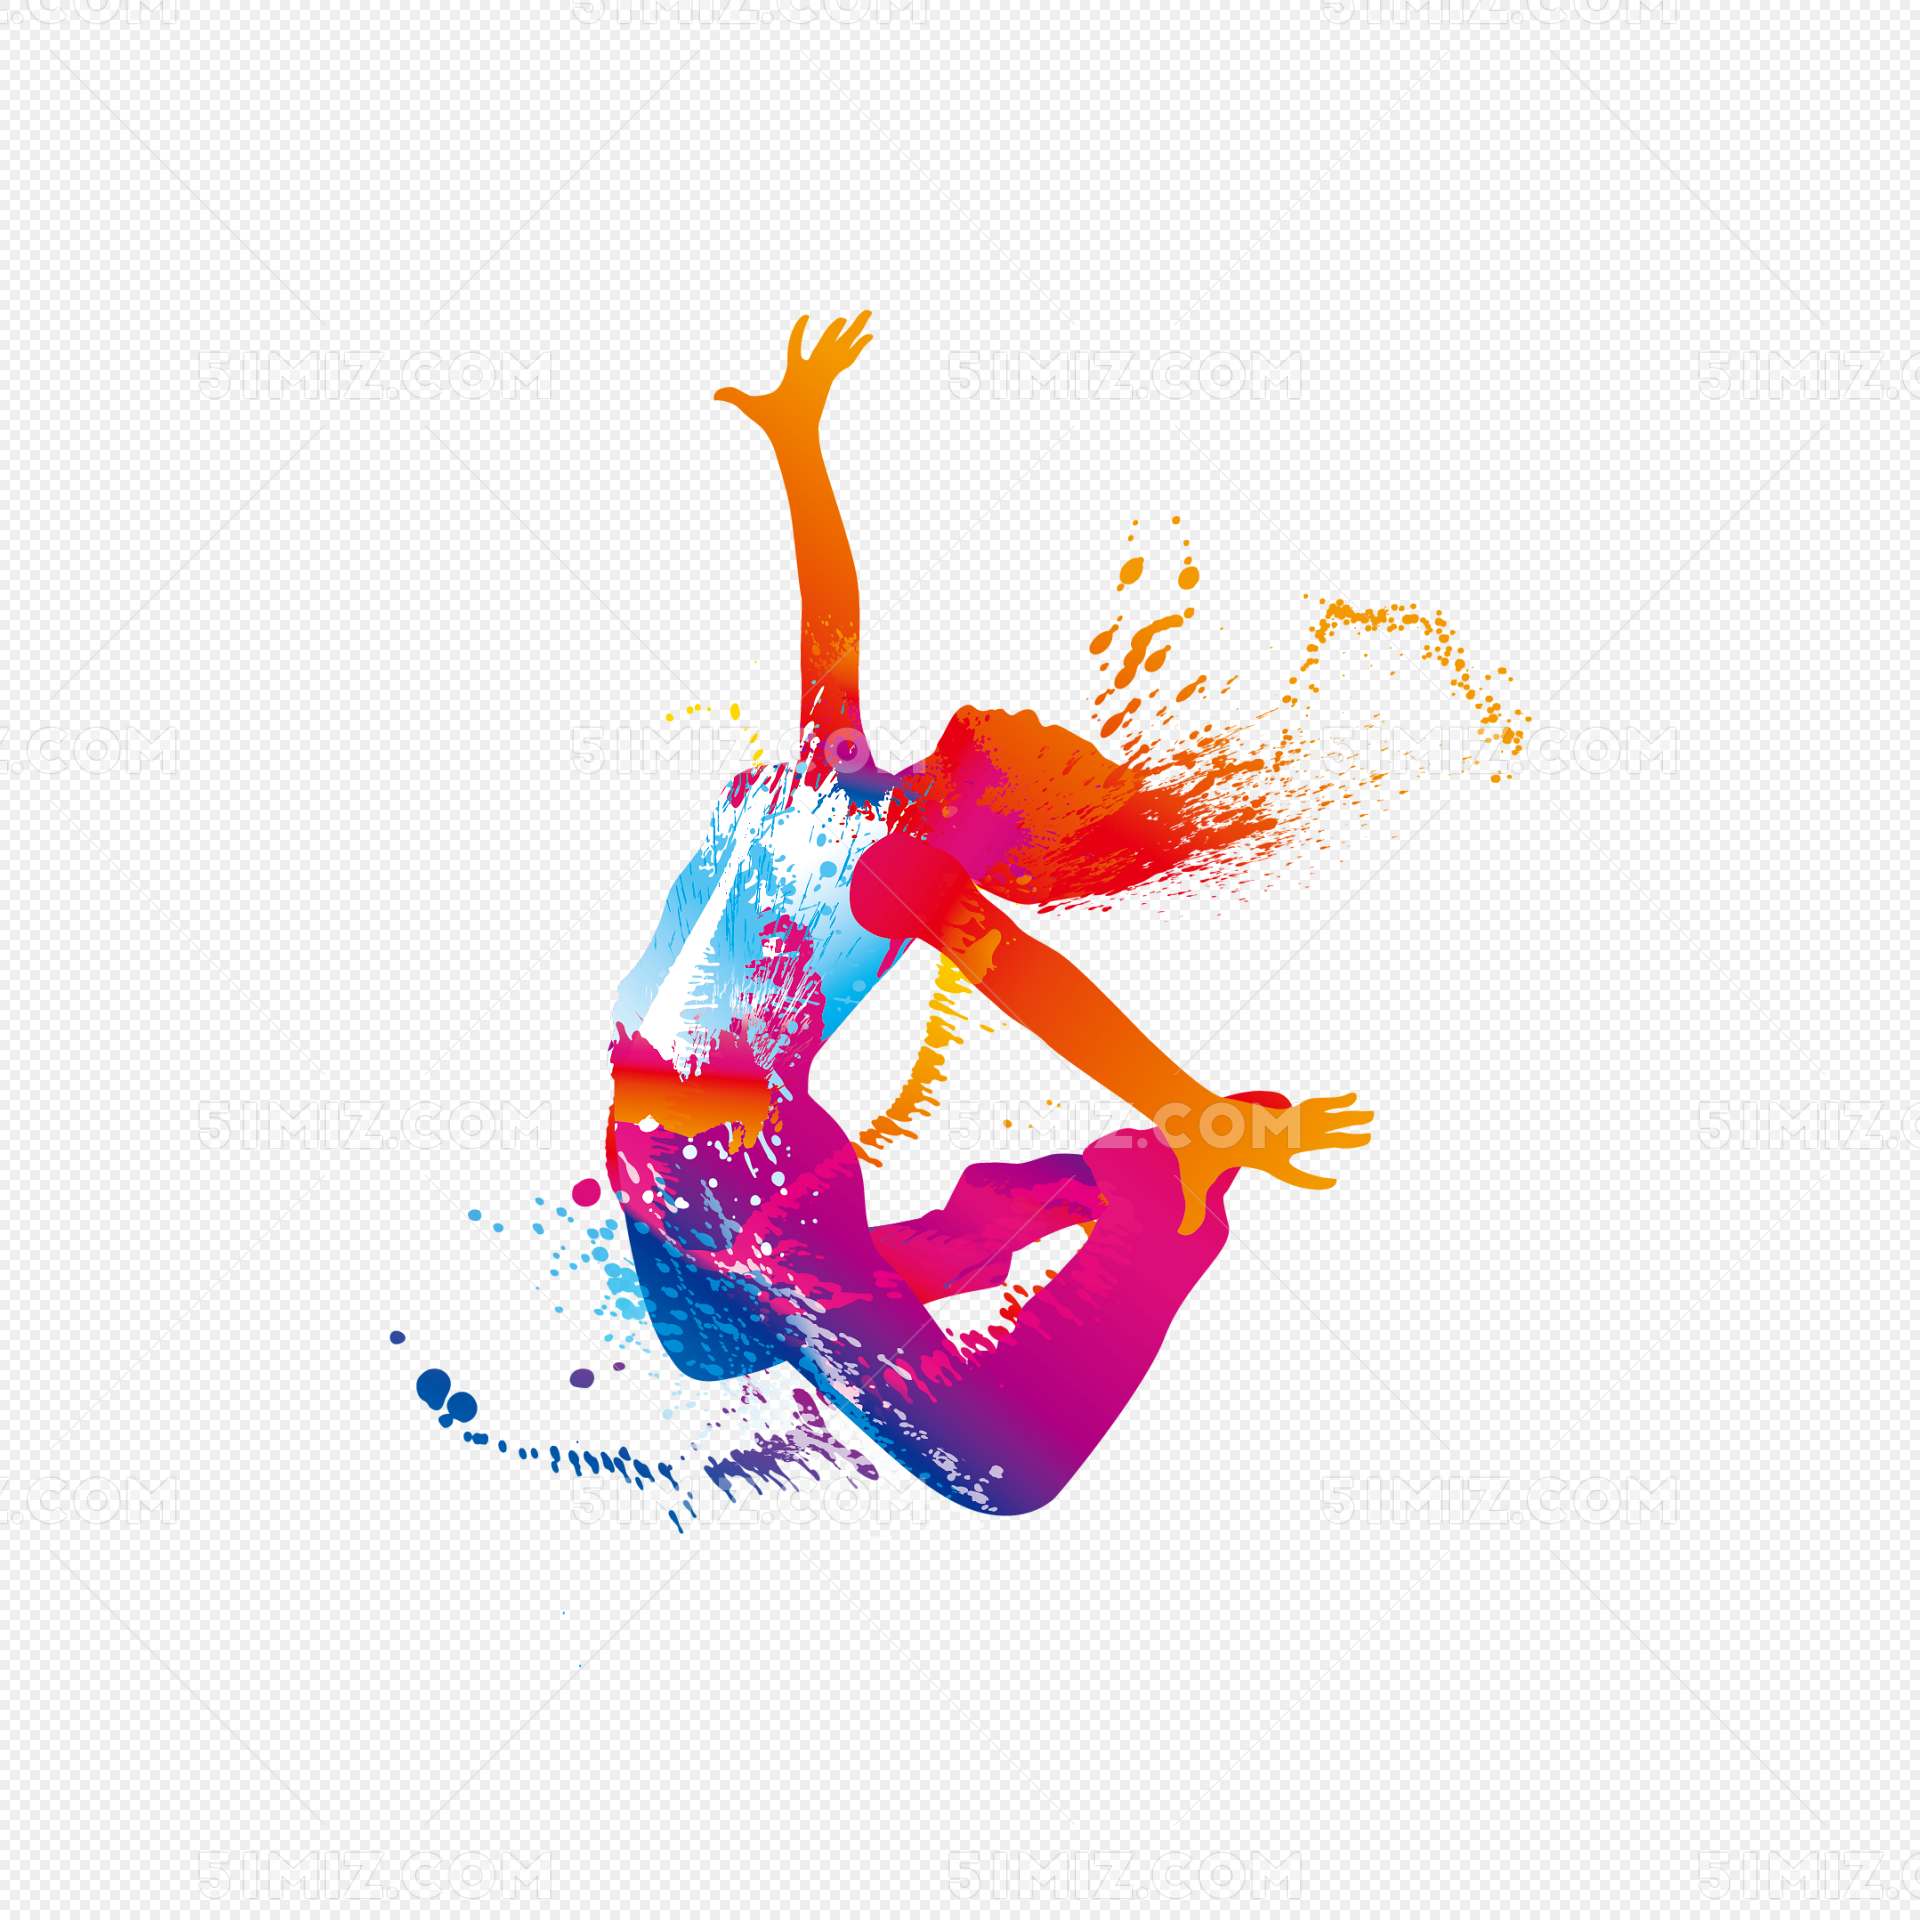 创意水墨彩绘舞蹈人物插画免抠图片素材免费下载 - 觅知网